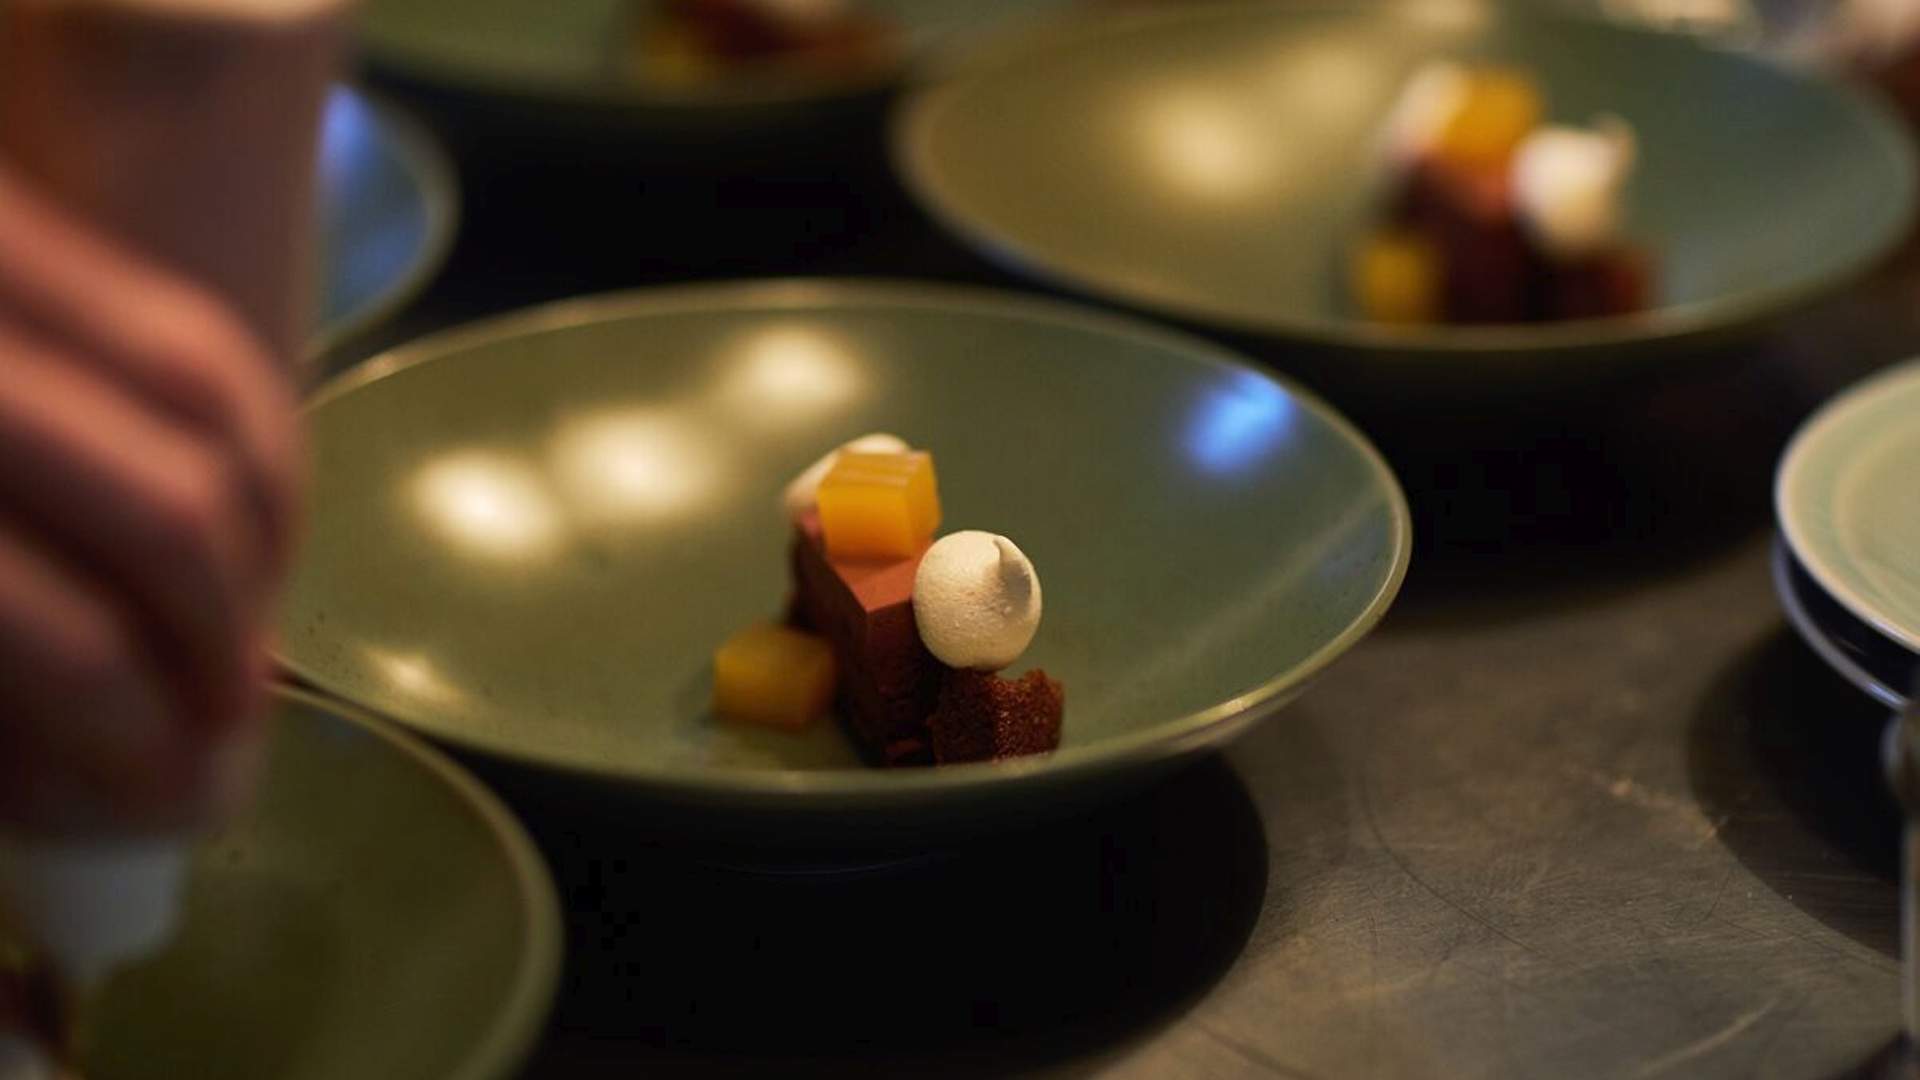 Pierre Roelofs' Dessert Evenings 2018